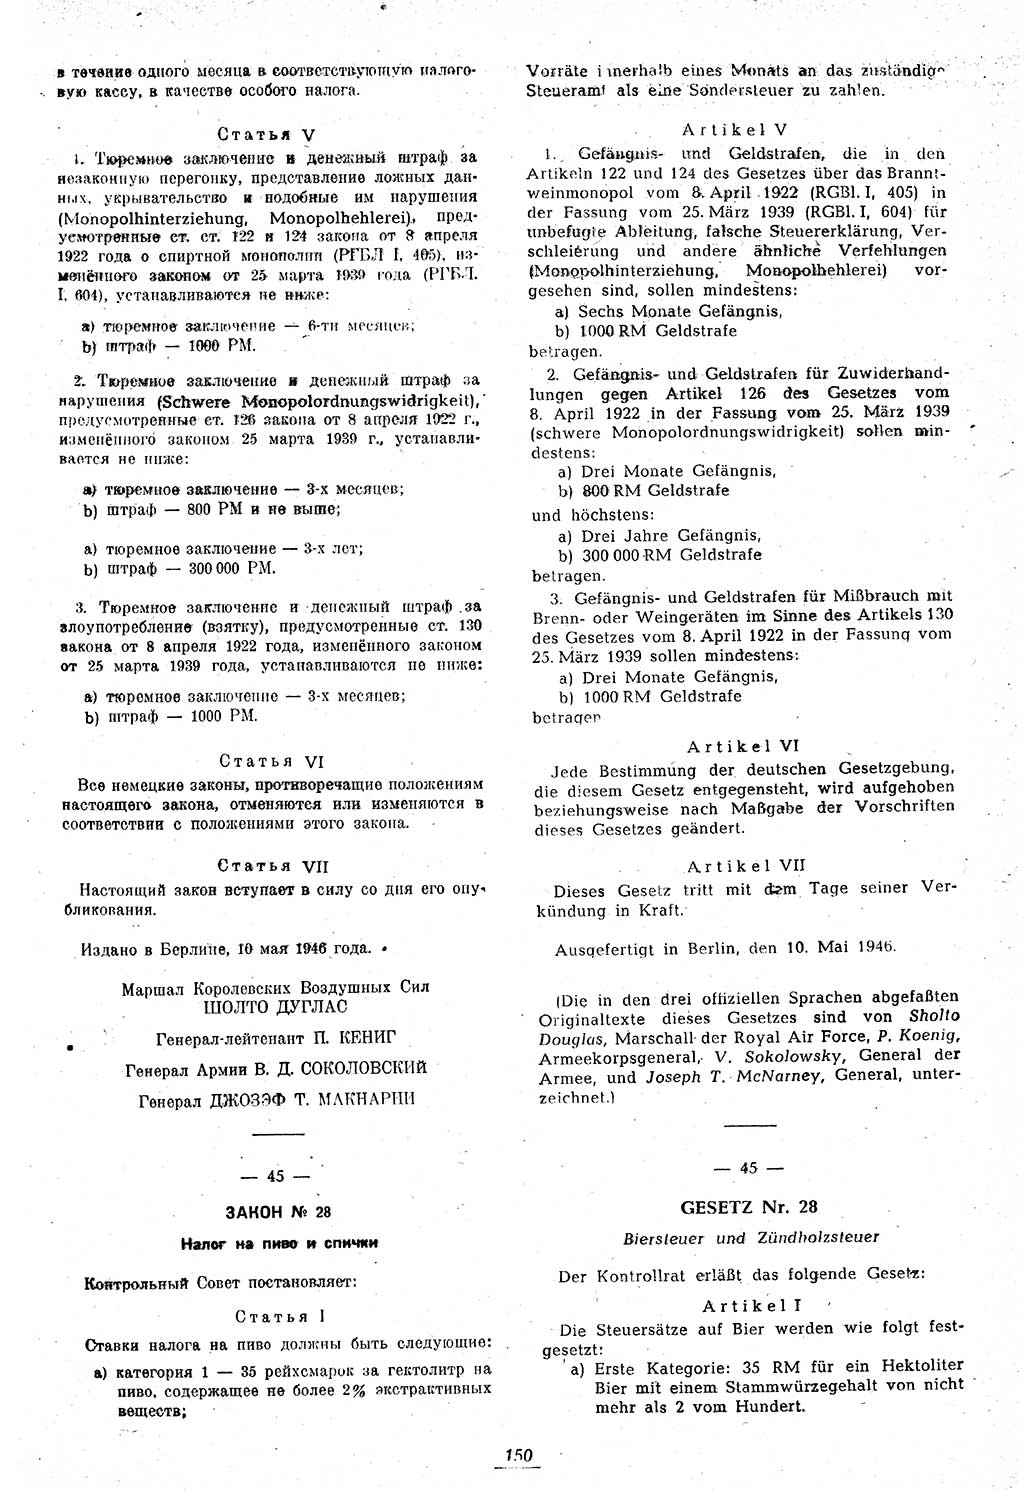 Amtsblatt des Kontrollrats (ABlKR) in Deutschland 1946, Seite 150/2 (ABlKR Dtl. 1946, S. 150/2)